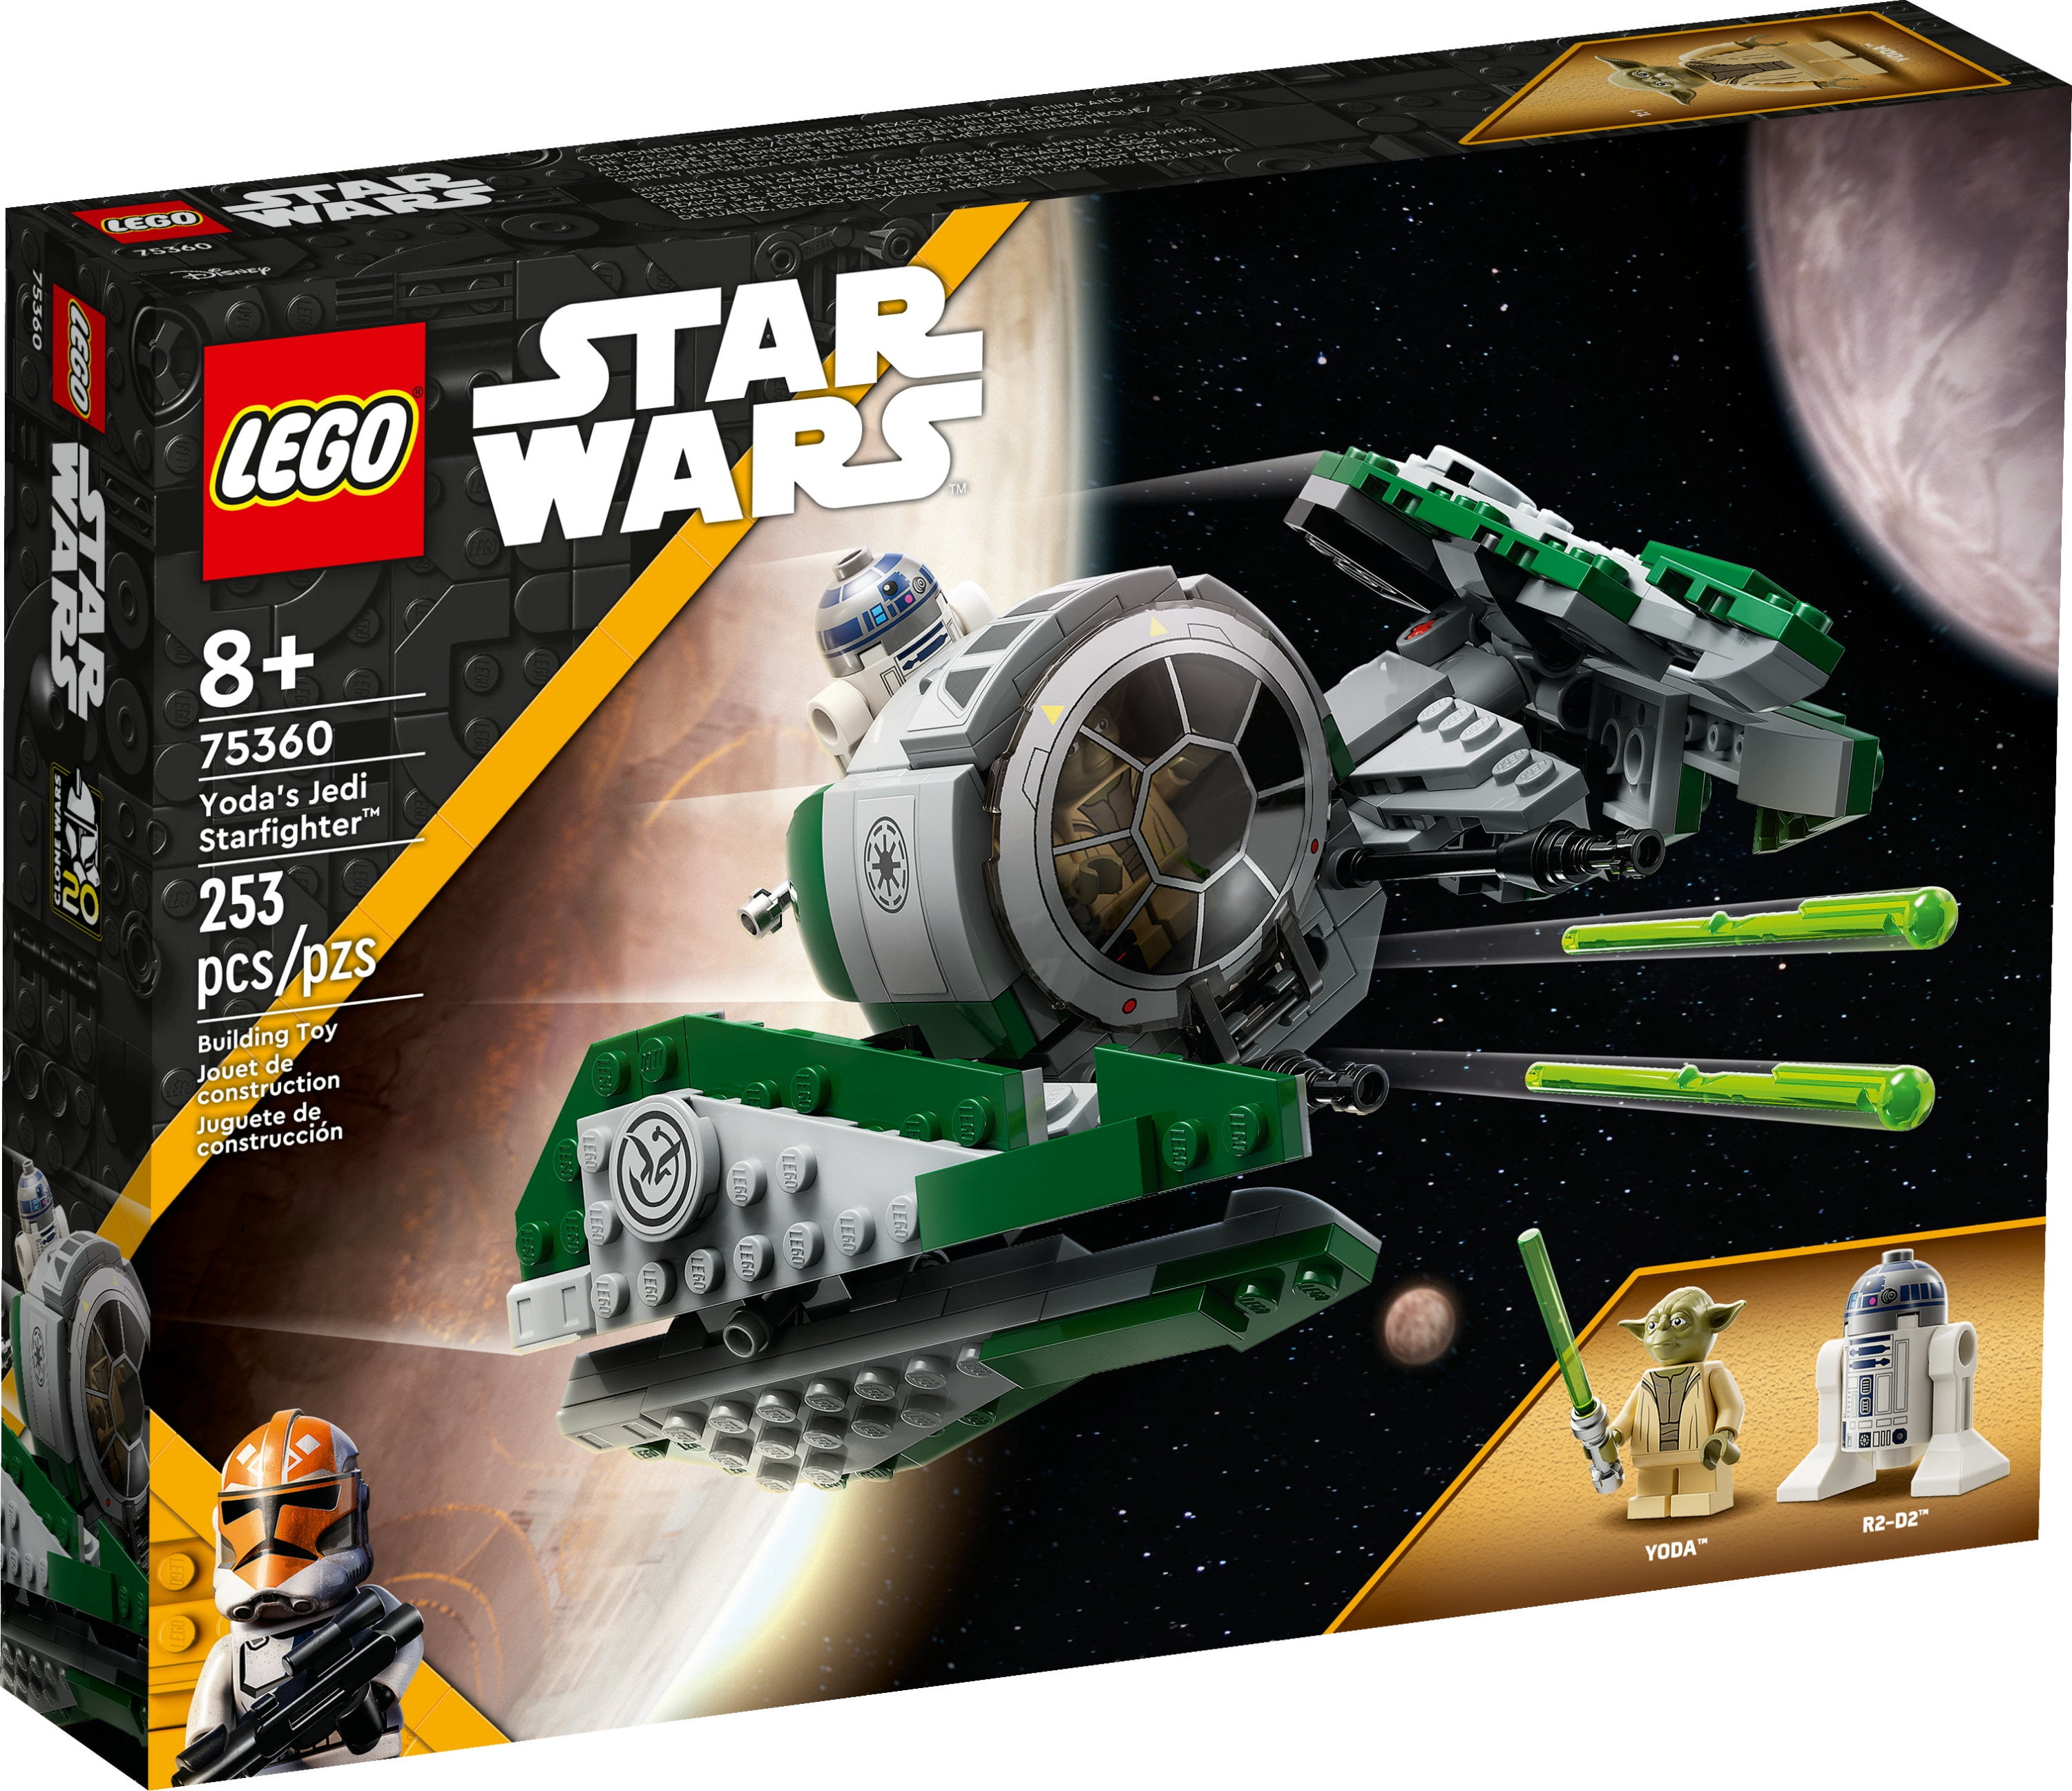 LEGO Star Wars: The Clone Wars Yoda's Jedi Starfighter 75360 Star